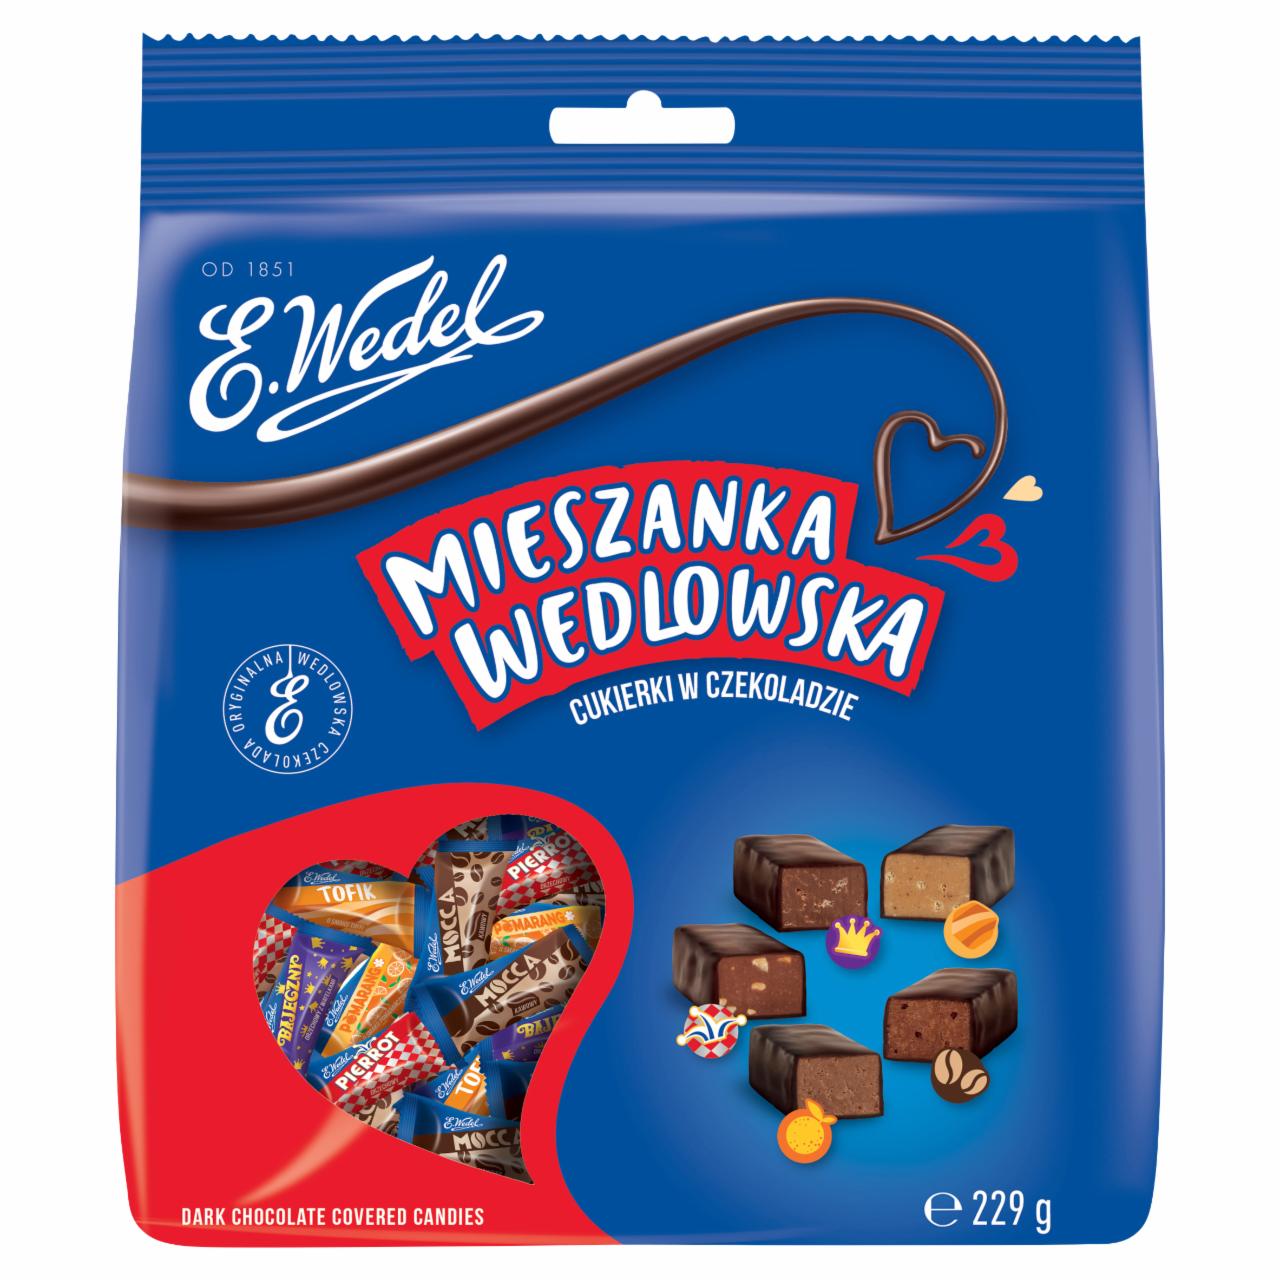 Zdjęcia - E. Wedel Mieszanka Wedlowska Cukierki w czekoladzie deserowej 229 g